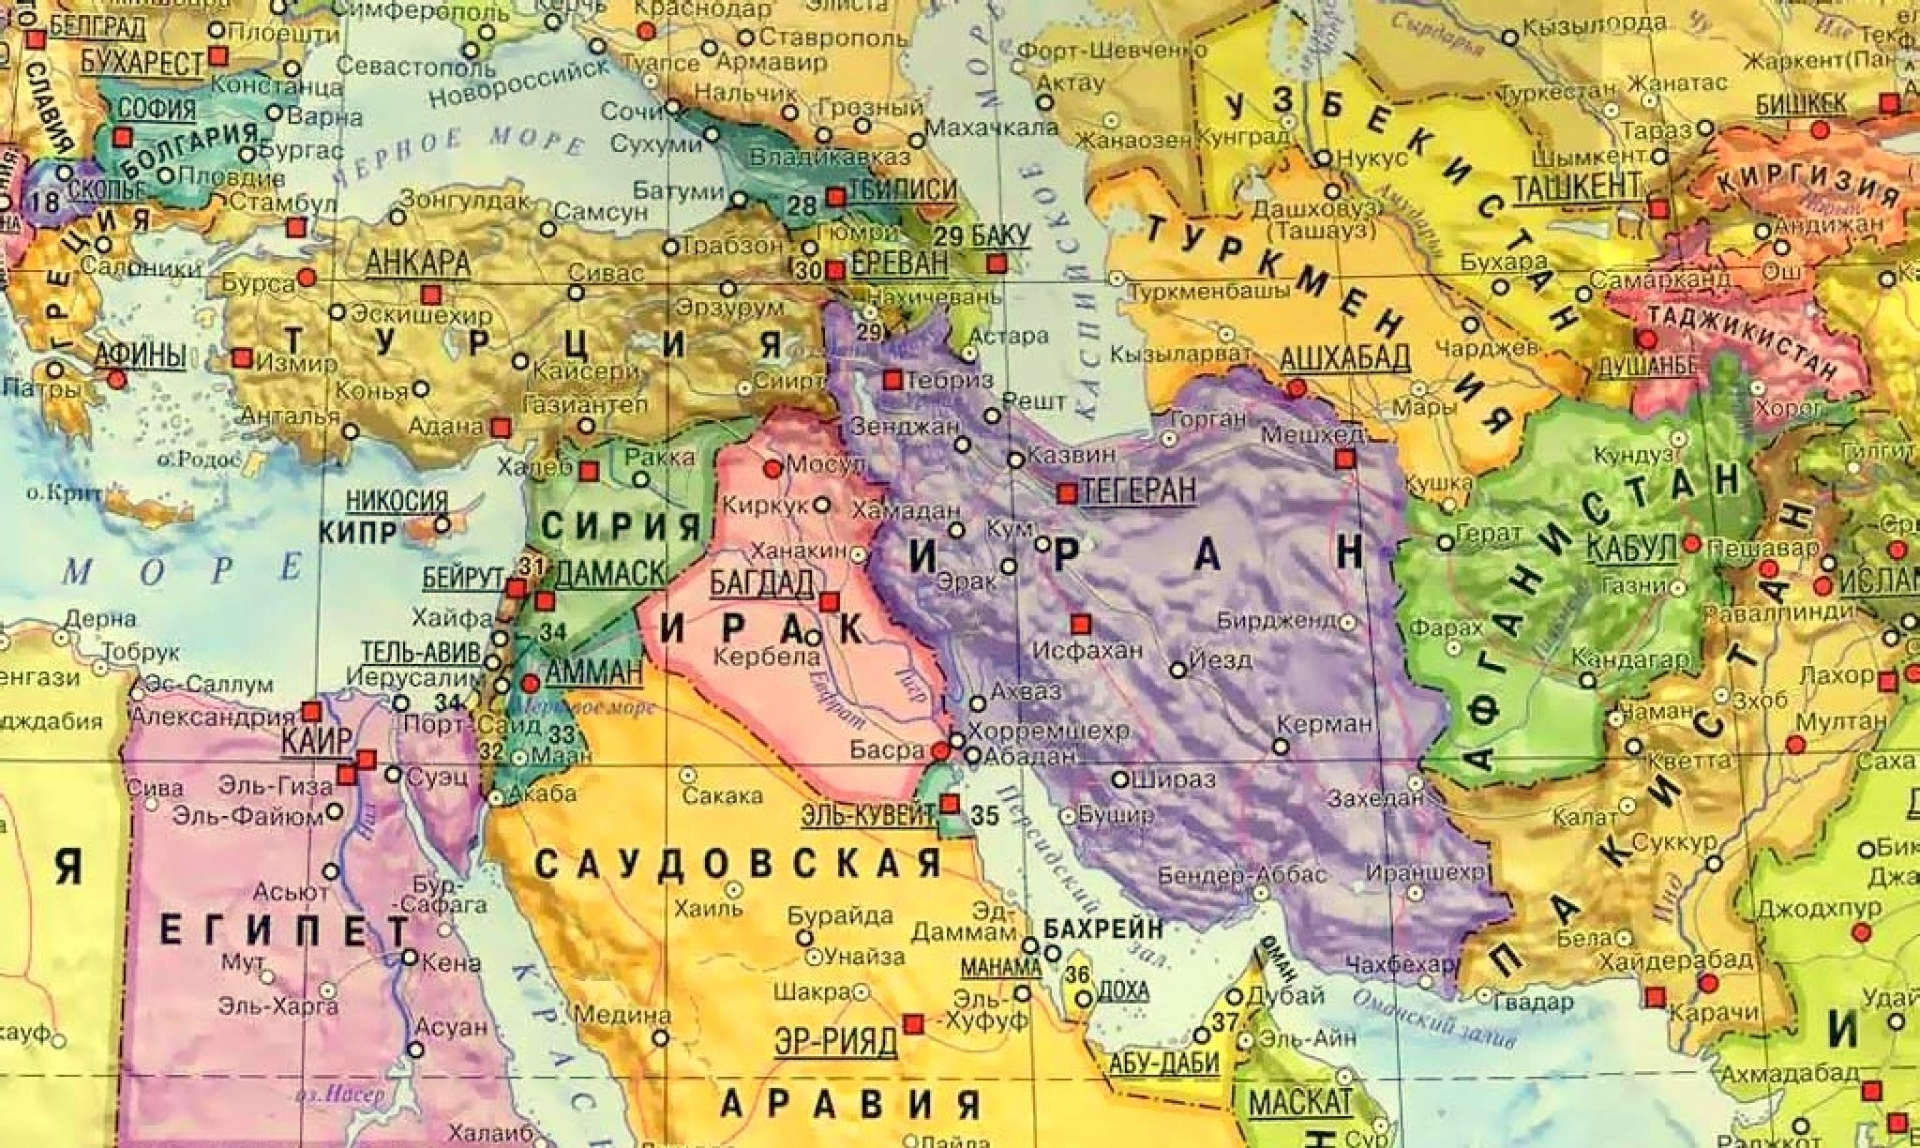 Подробная карта востока. Политическая карта ближнего Востока. Карта Ирана и Ирака на русском языке географическая крупная. Иран Ирак Сирия на карте.